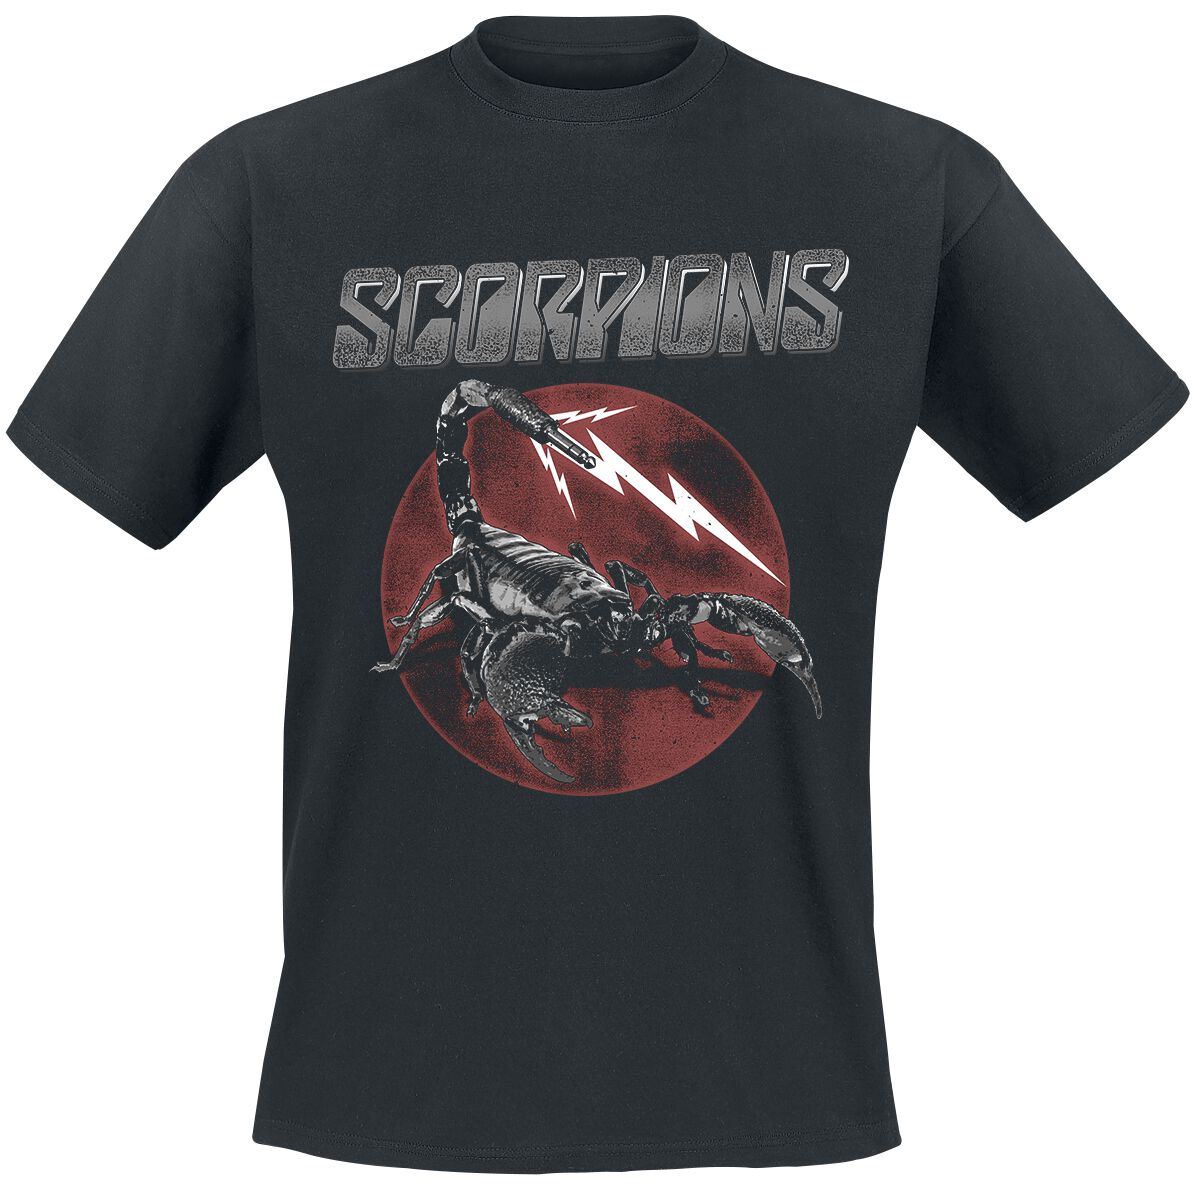 Scorpions T-Shirt - 7 Jack Plug - S bis 3XL - für Männer - Größe 3XL - schwarz  - Lizenziertes Merchandise!